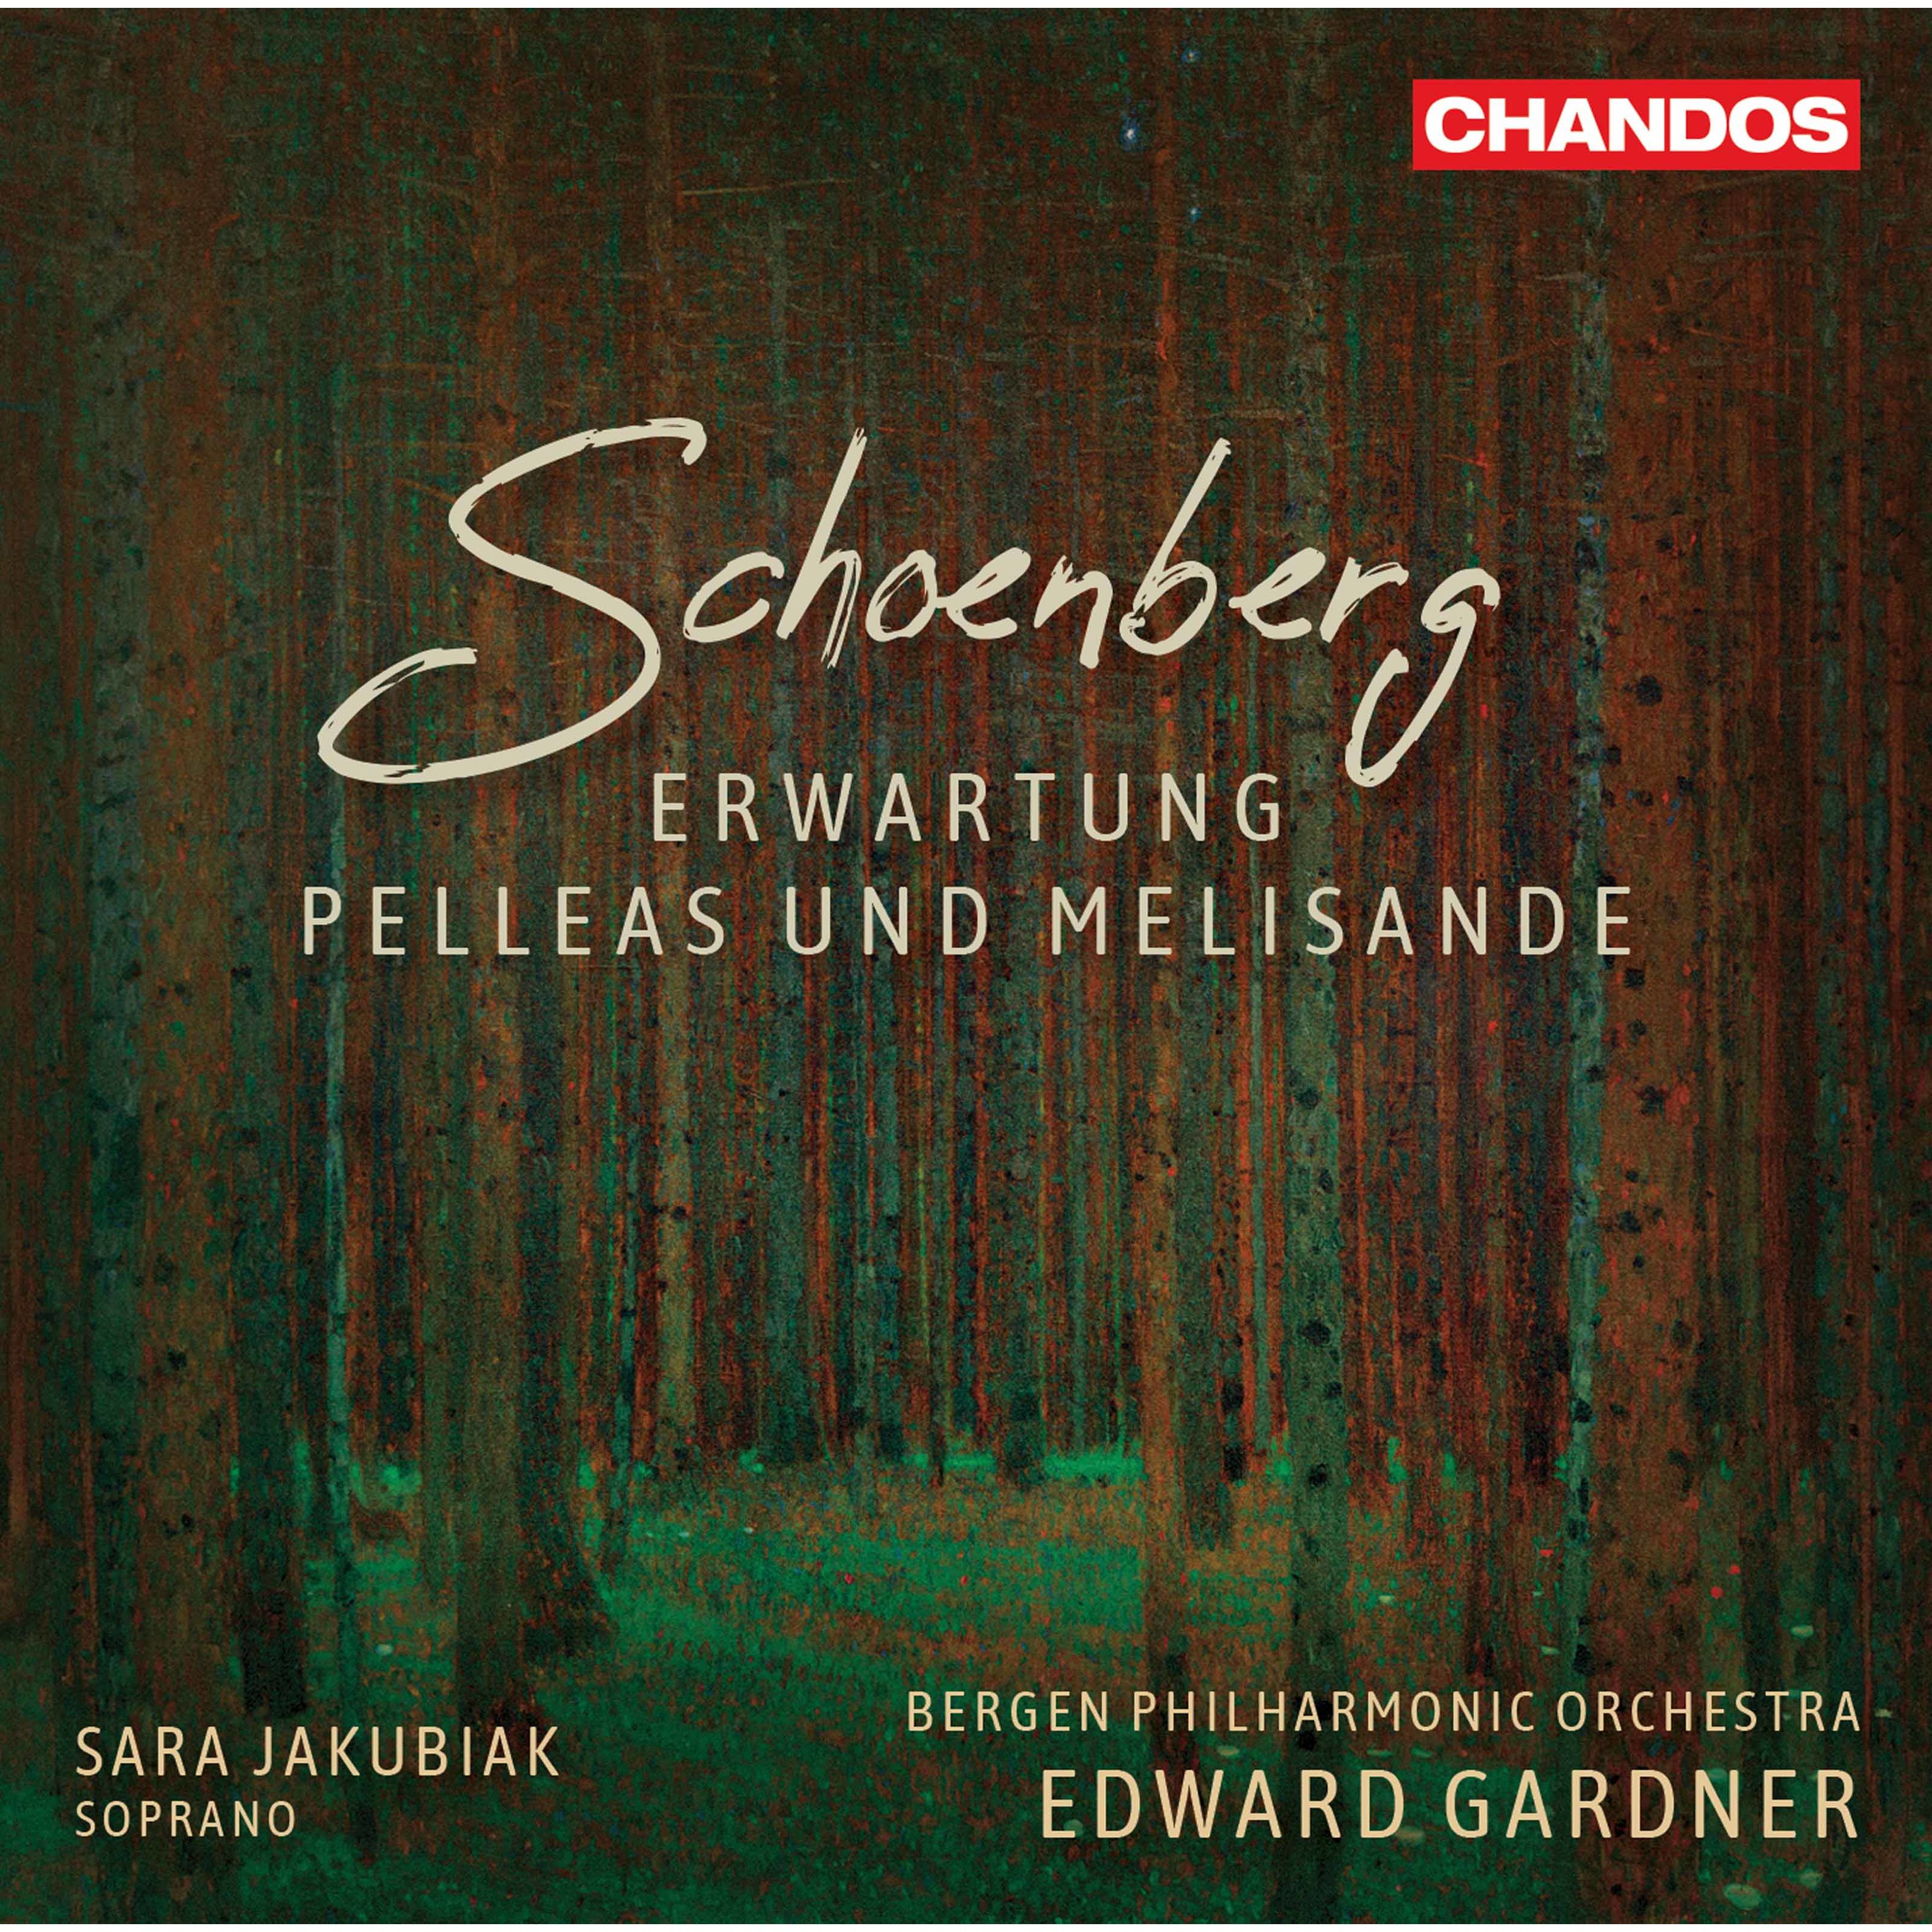 Edward Gardner, Bergen Philharmonic Orchestra, Sara Jakubiak - Schoenberg: Erwartung Op. 17 & Pelleas und Melisande Op. 5 (2020) [FLAC 24bit/96kHz]